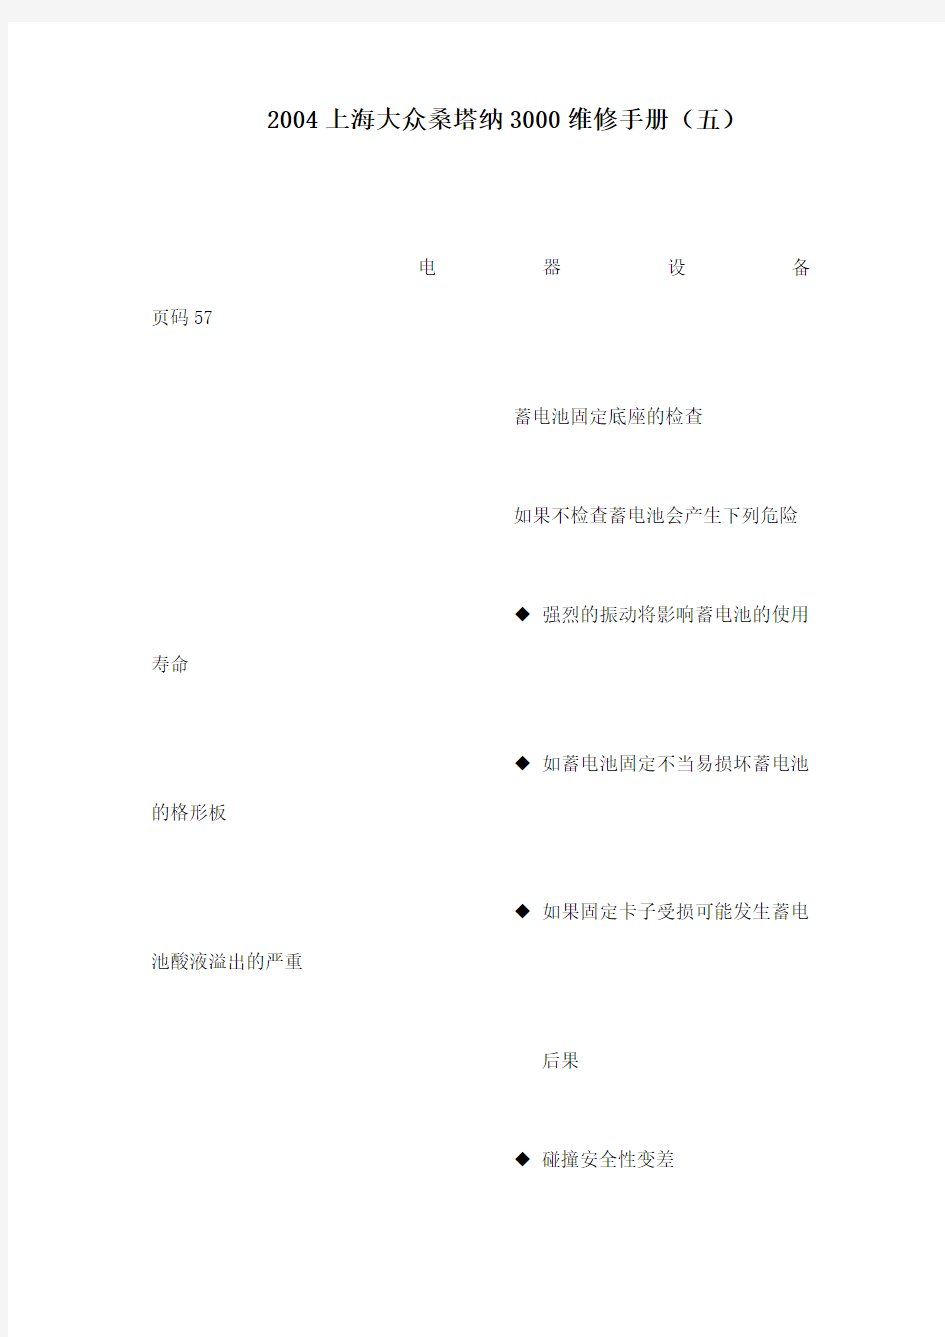 上海大众桑塔纳3000维修手册(五)